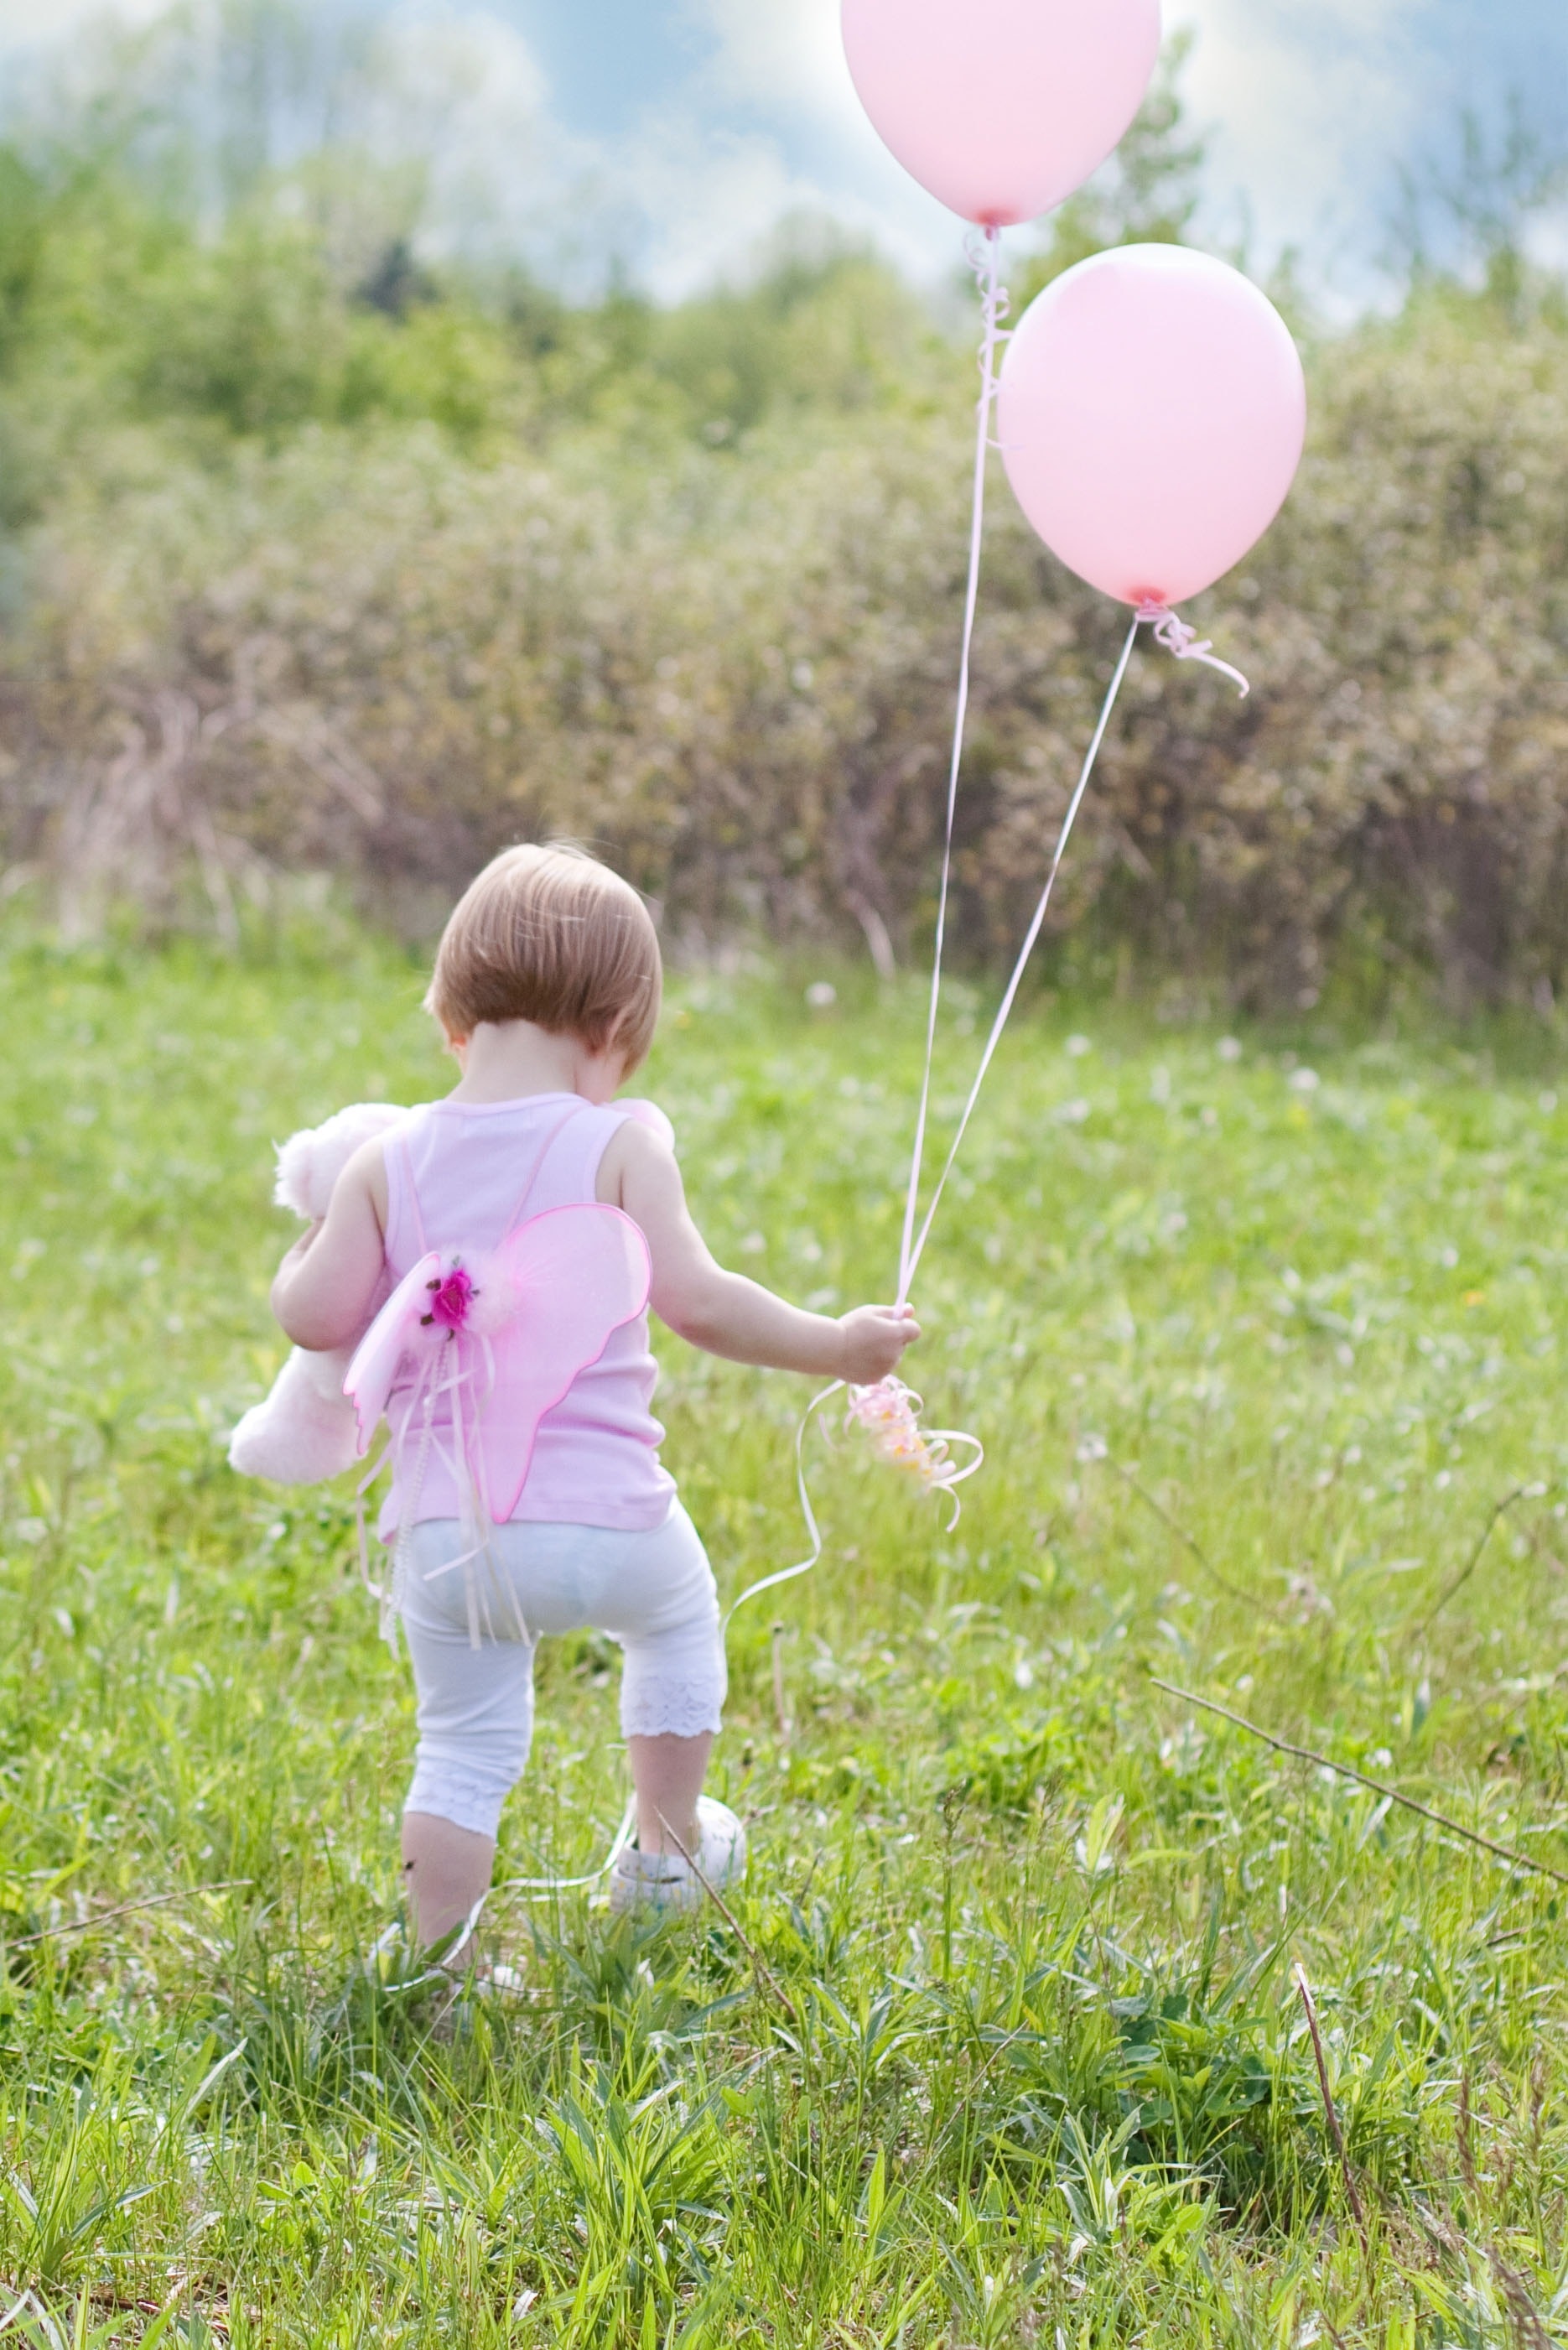 Summer, Little Girl With Balloons, balloon, grass